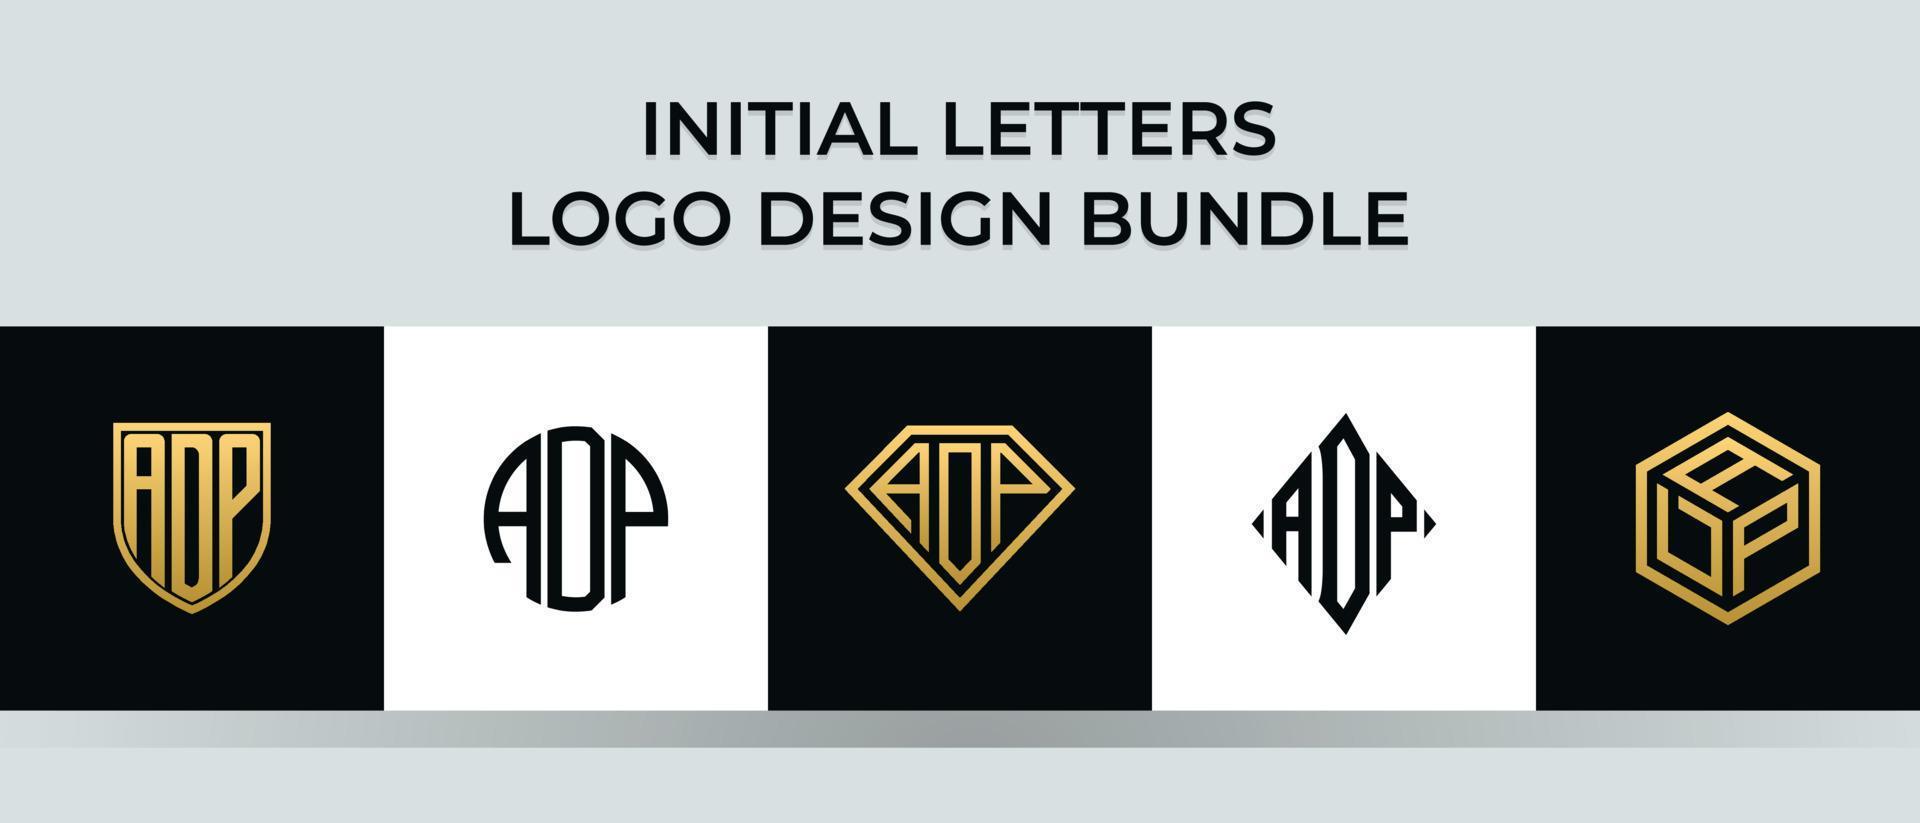 lettere iniziali adp logo design bundle vettore